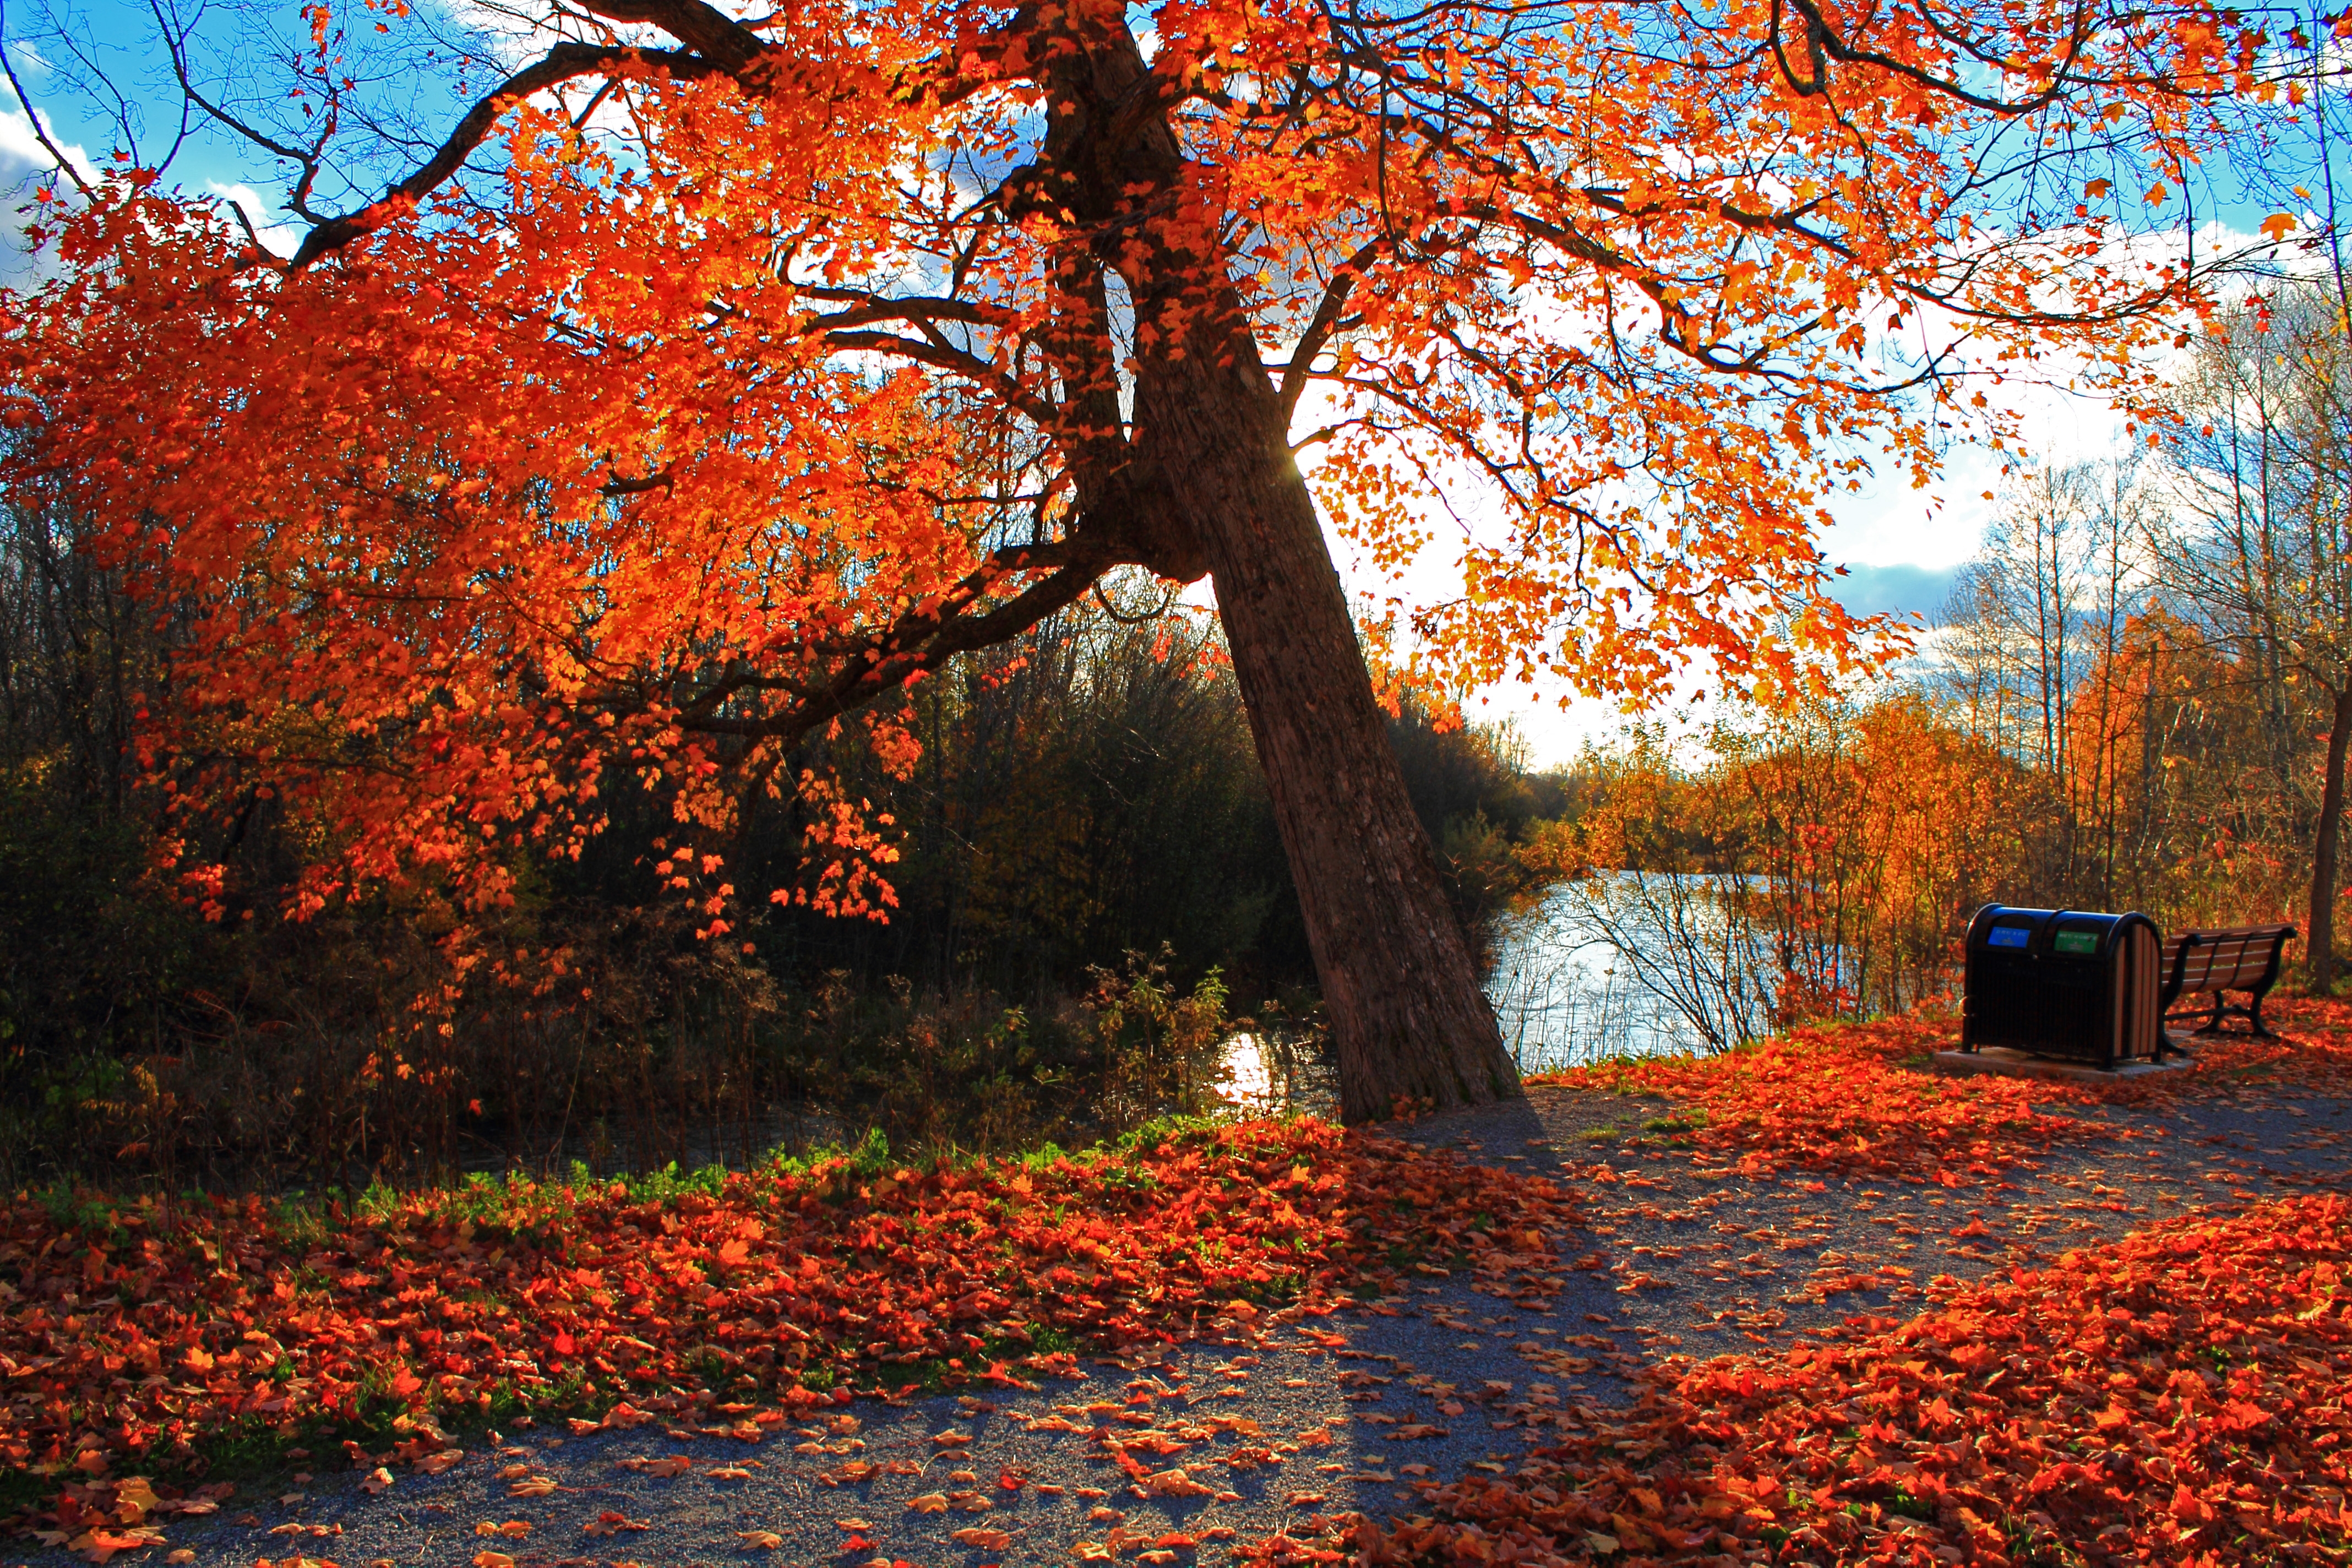 Fall scenes. Осень. Осень фото. Осенний пейзаж. Осенний парк.